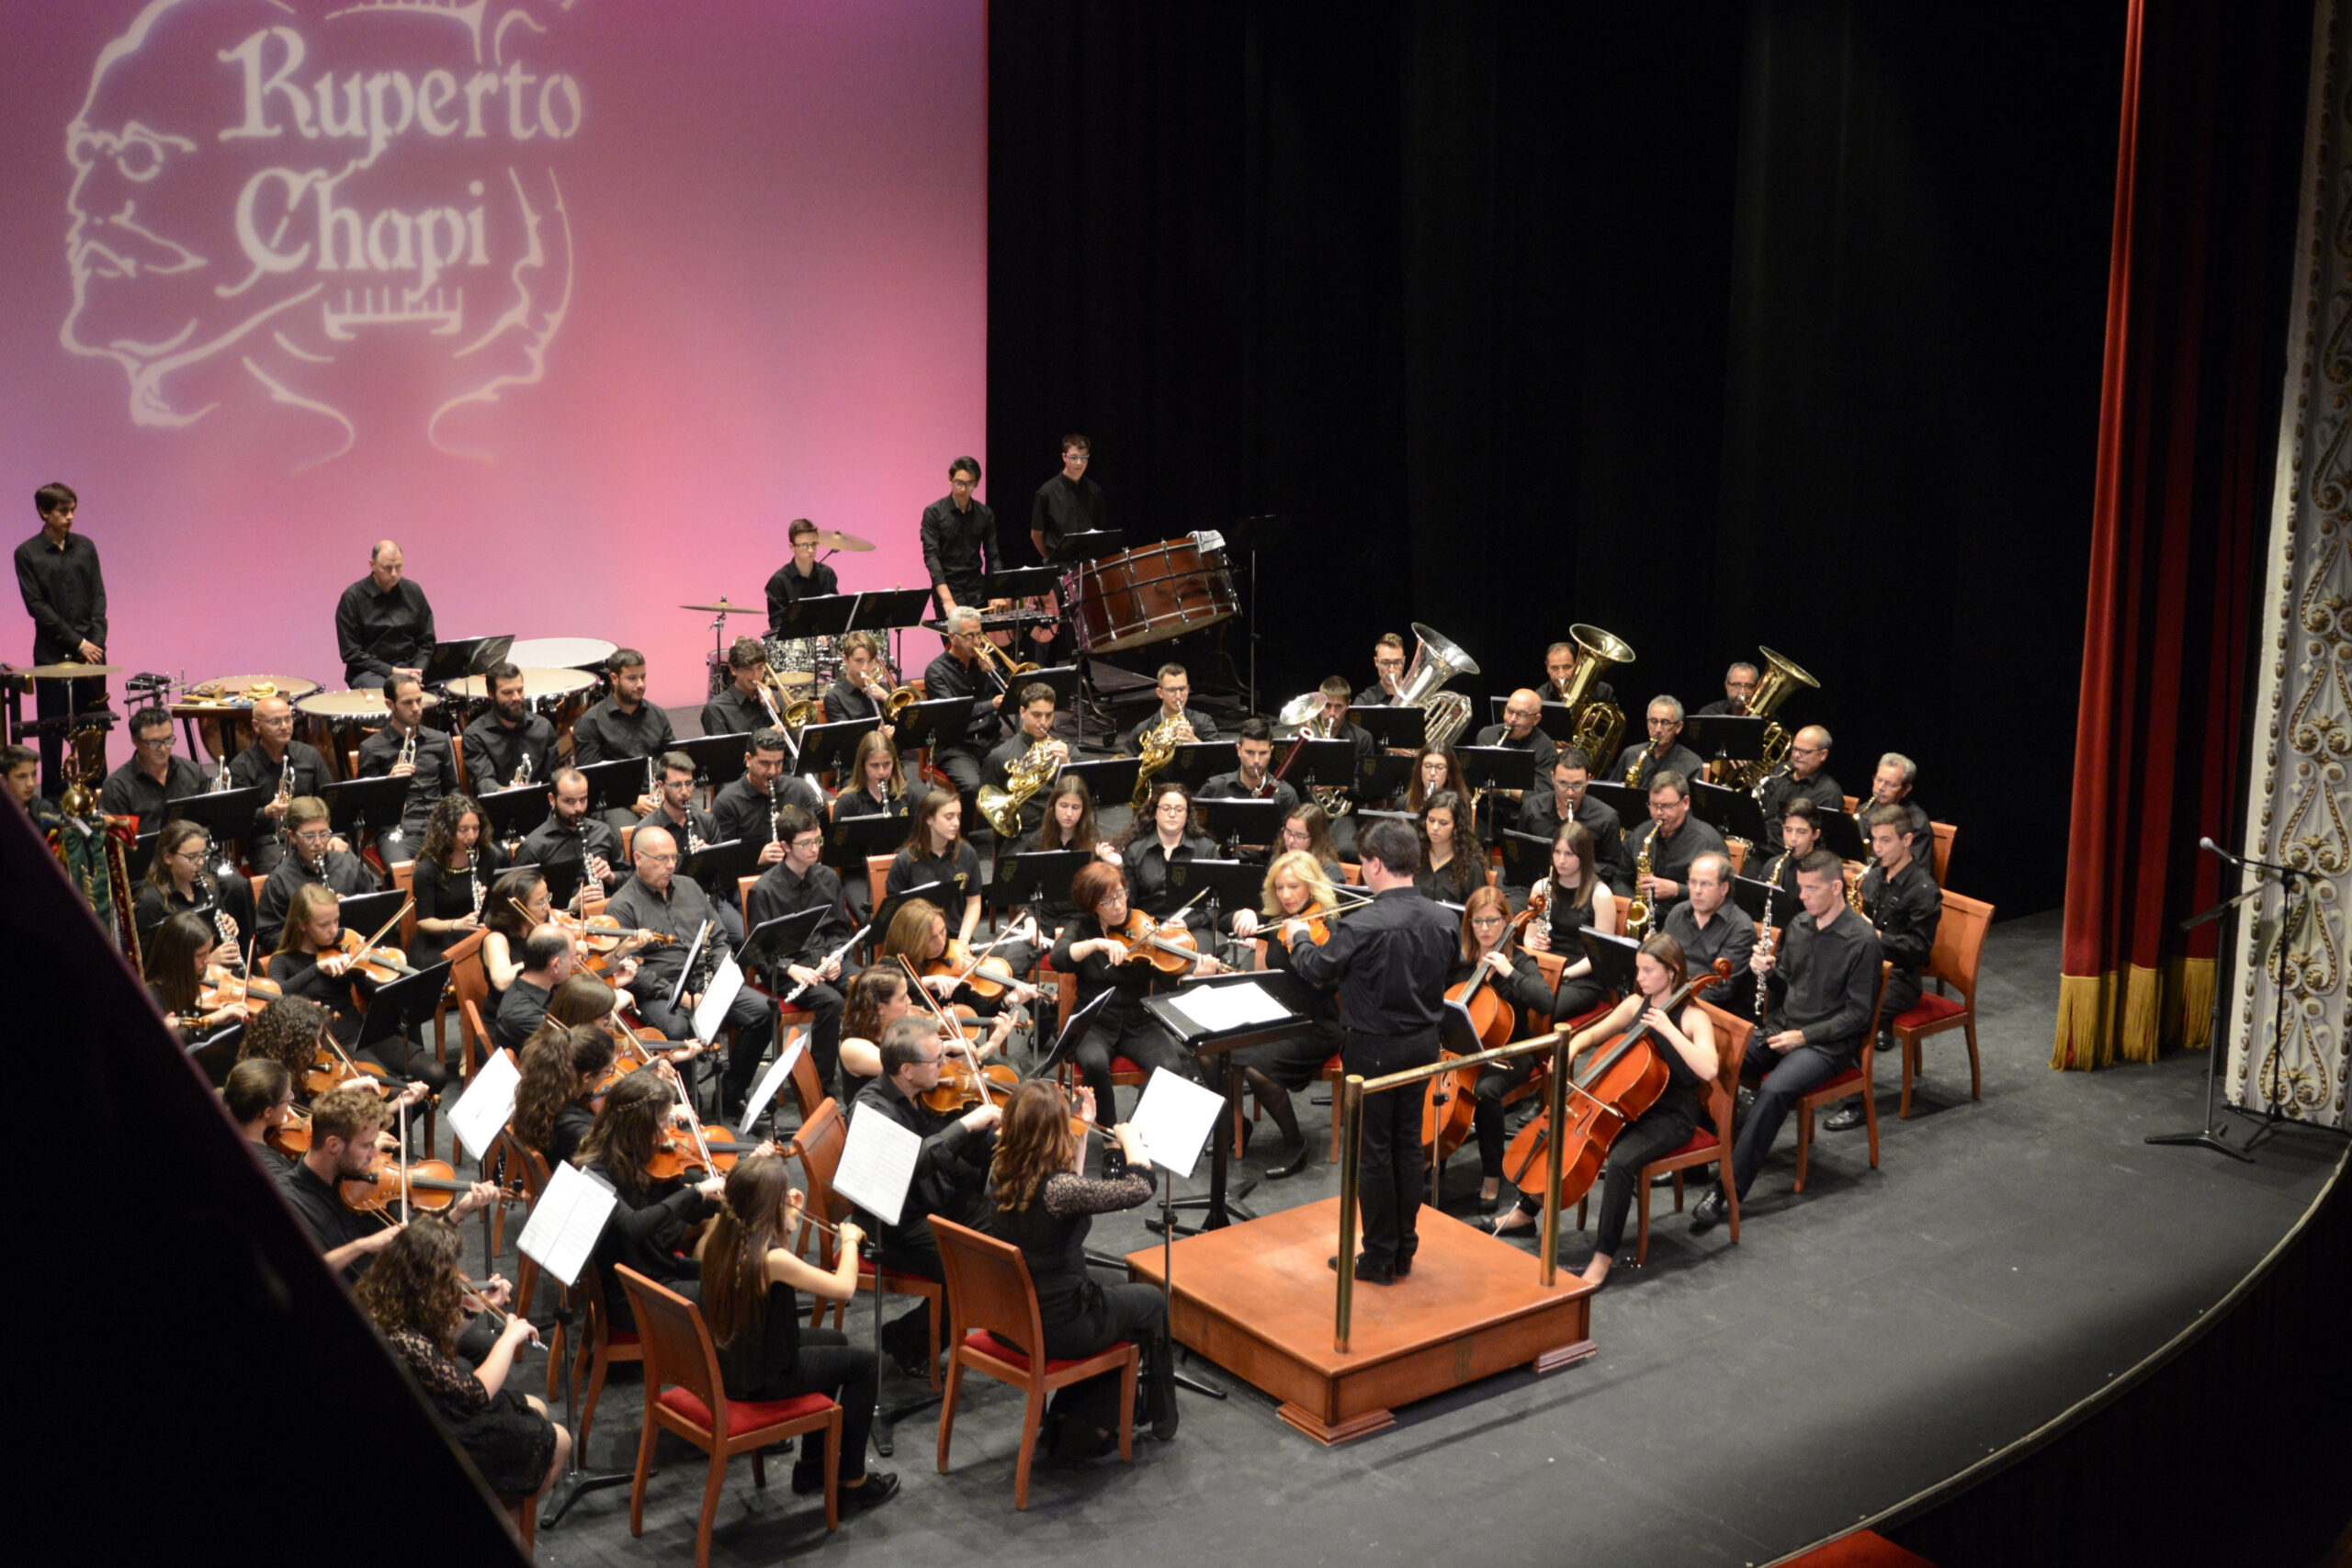 La Sociedad Musical Ruperto Chapí realizará el sábado un concierto homenaje a Chapí